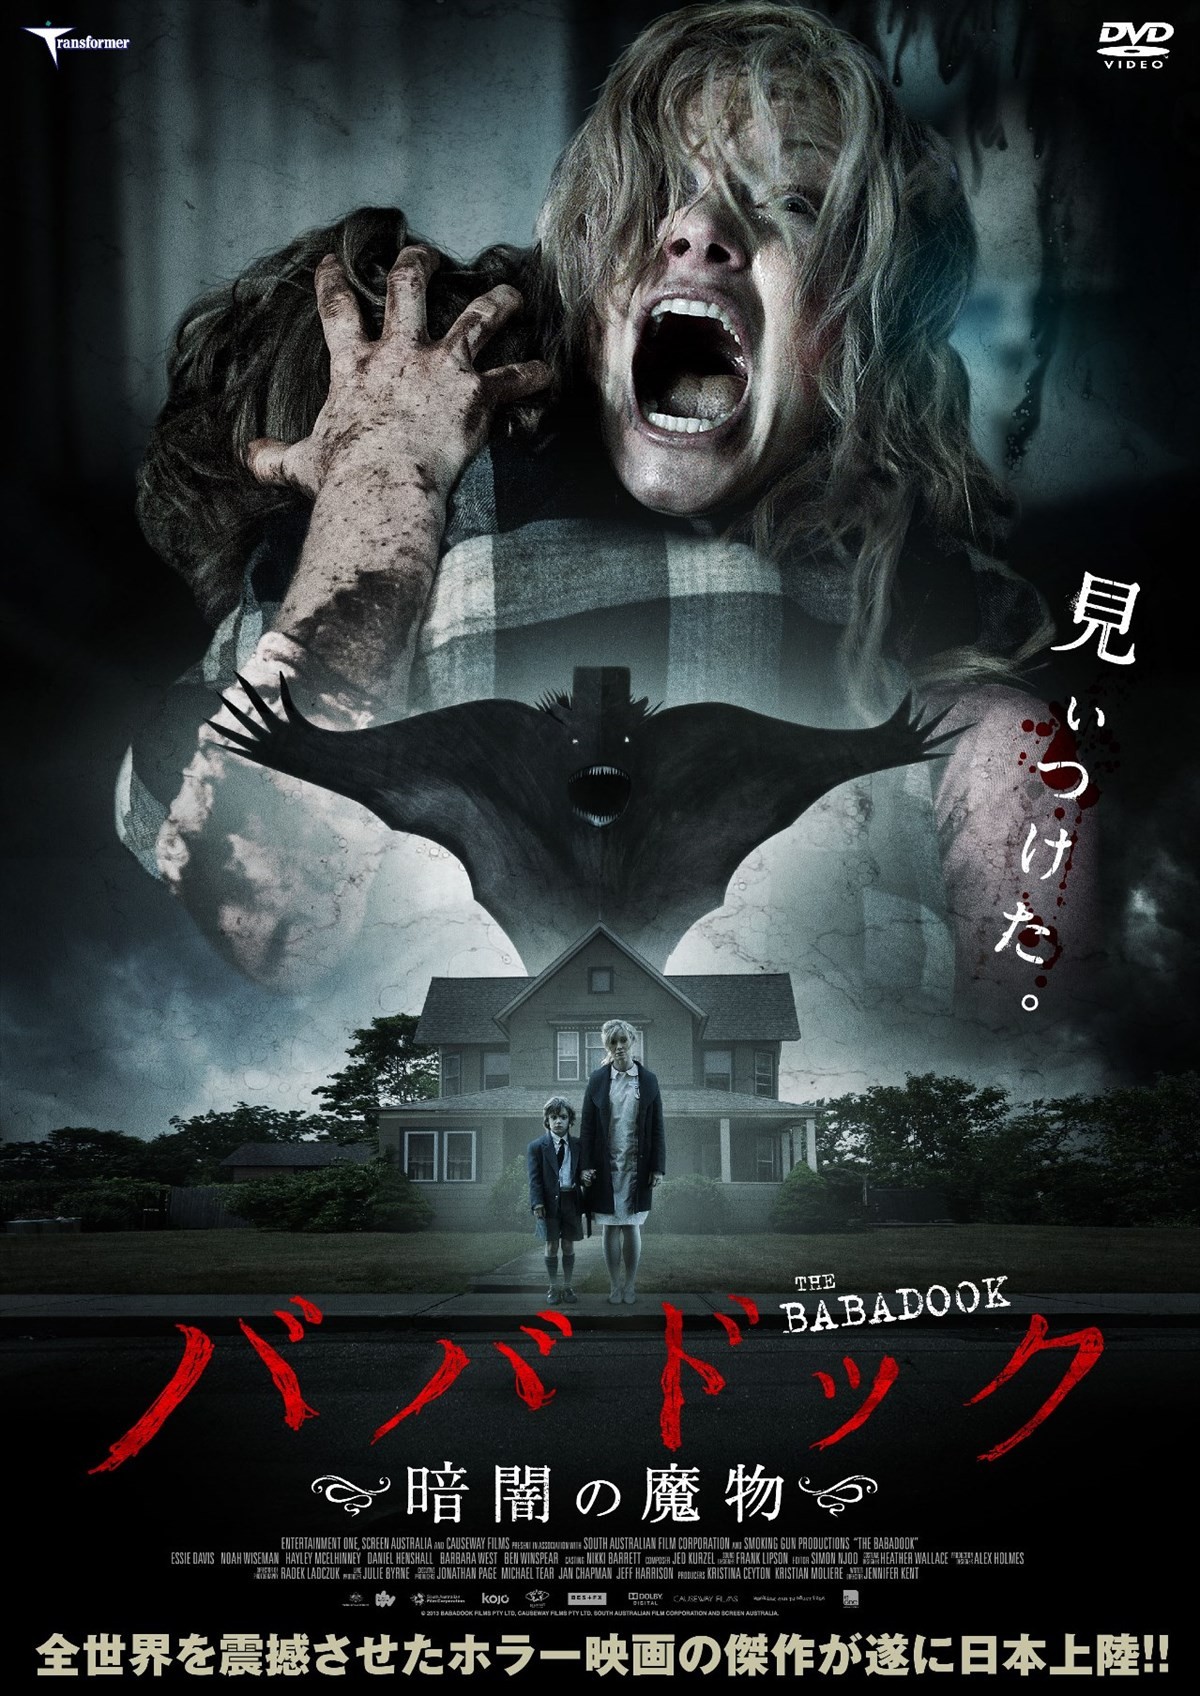 あまりにも怖すぎる 世界の映画祭を絶叫させた最恐ホラー ババドック 日本上陸 15年7月11日 映画 ニュース クランクイン